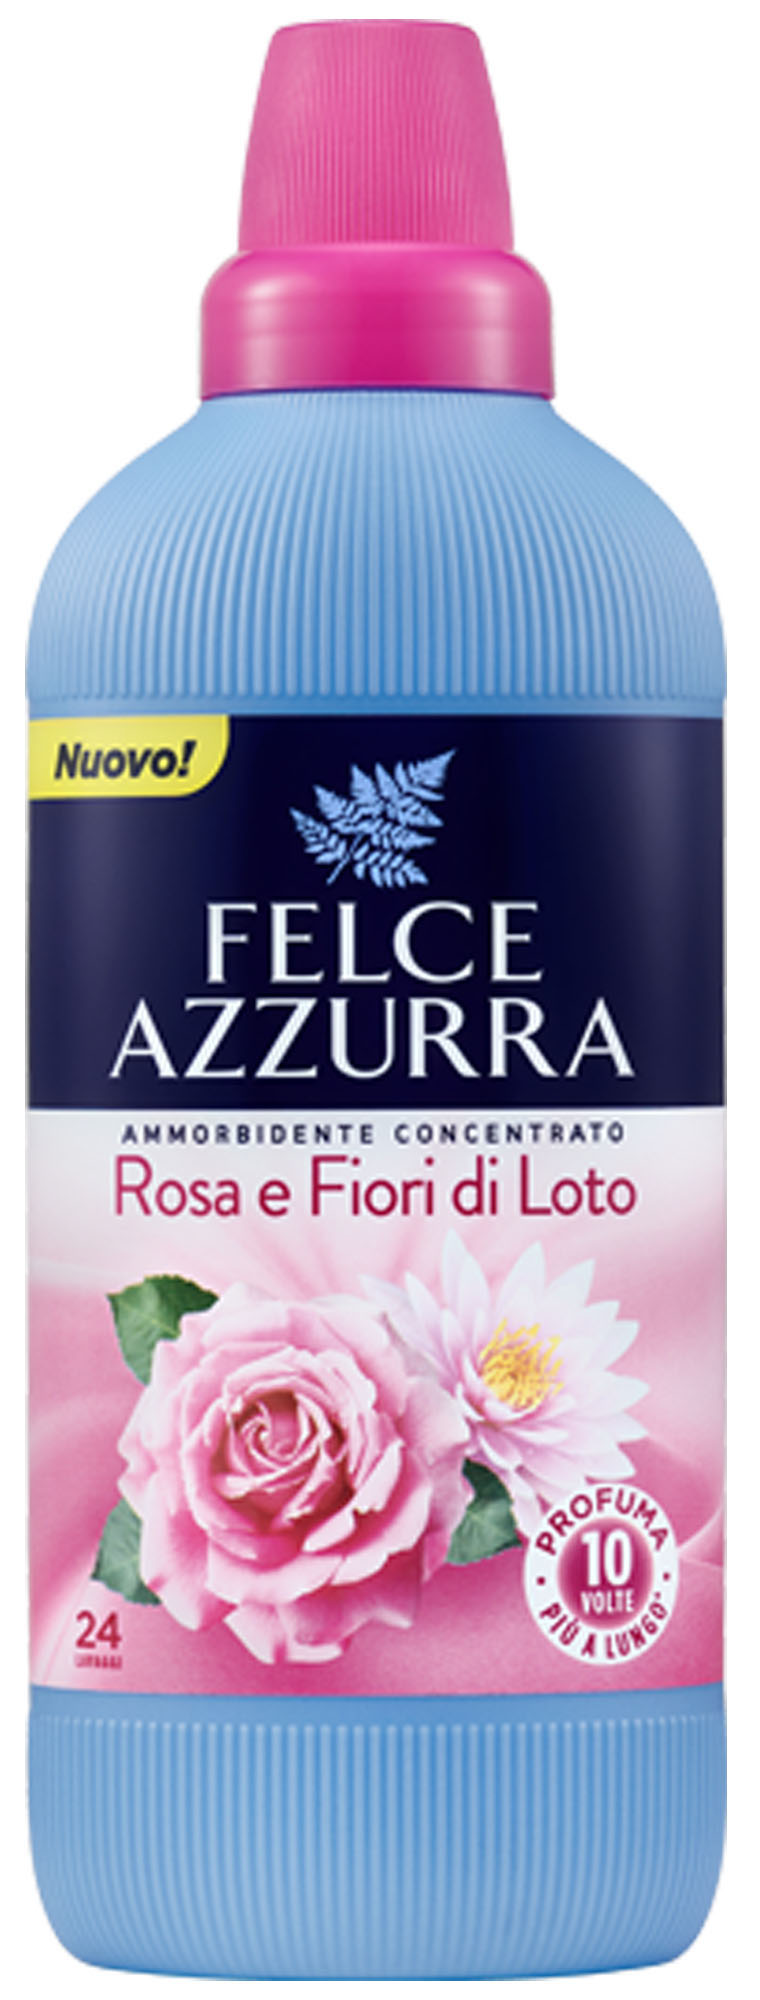 Balsam Concentrat de Rufe Felce Azzurra  - Trandafir si Flori de Lotus